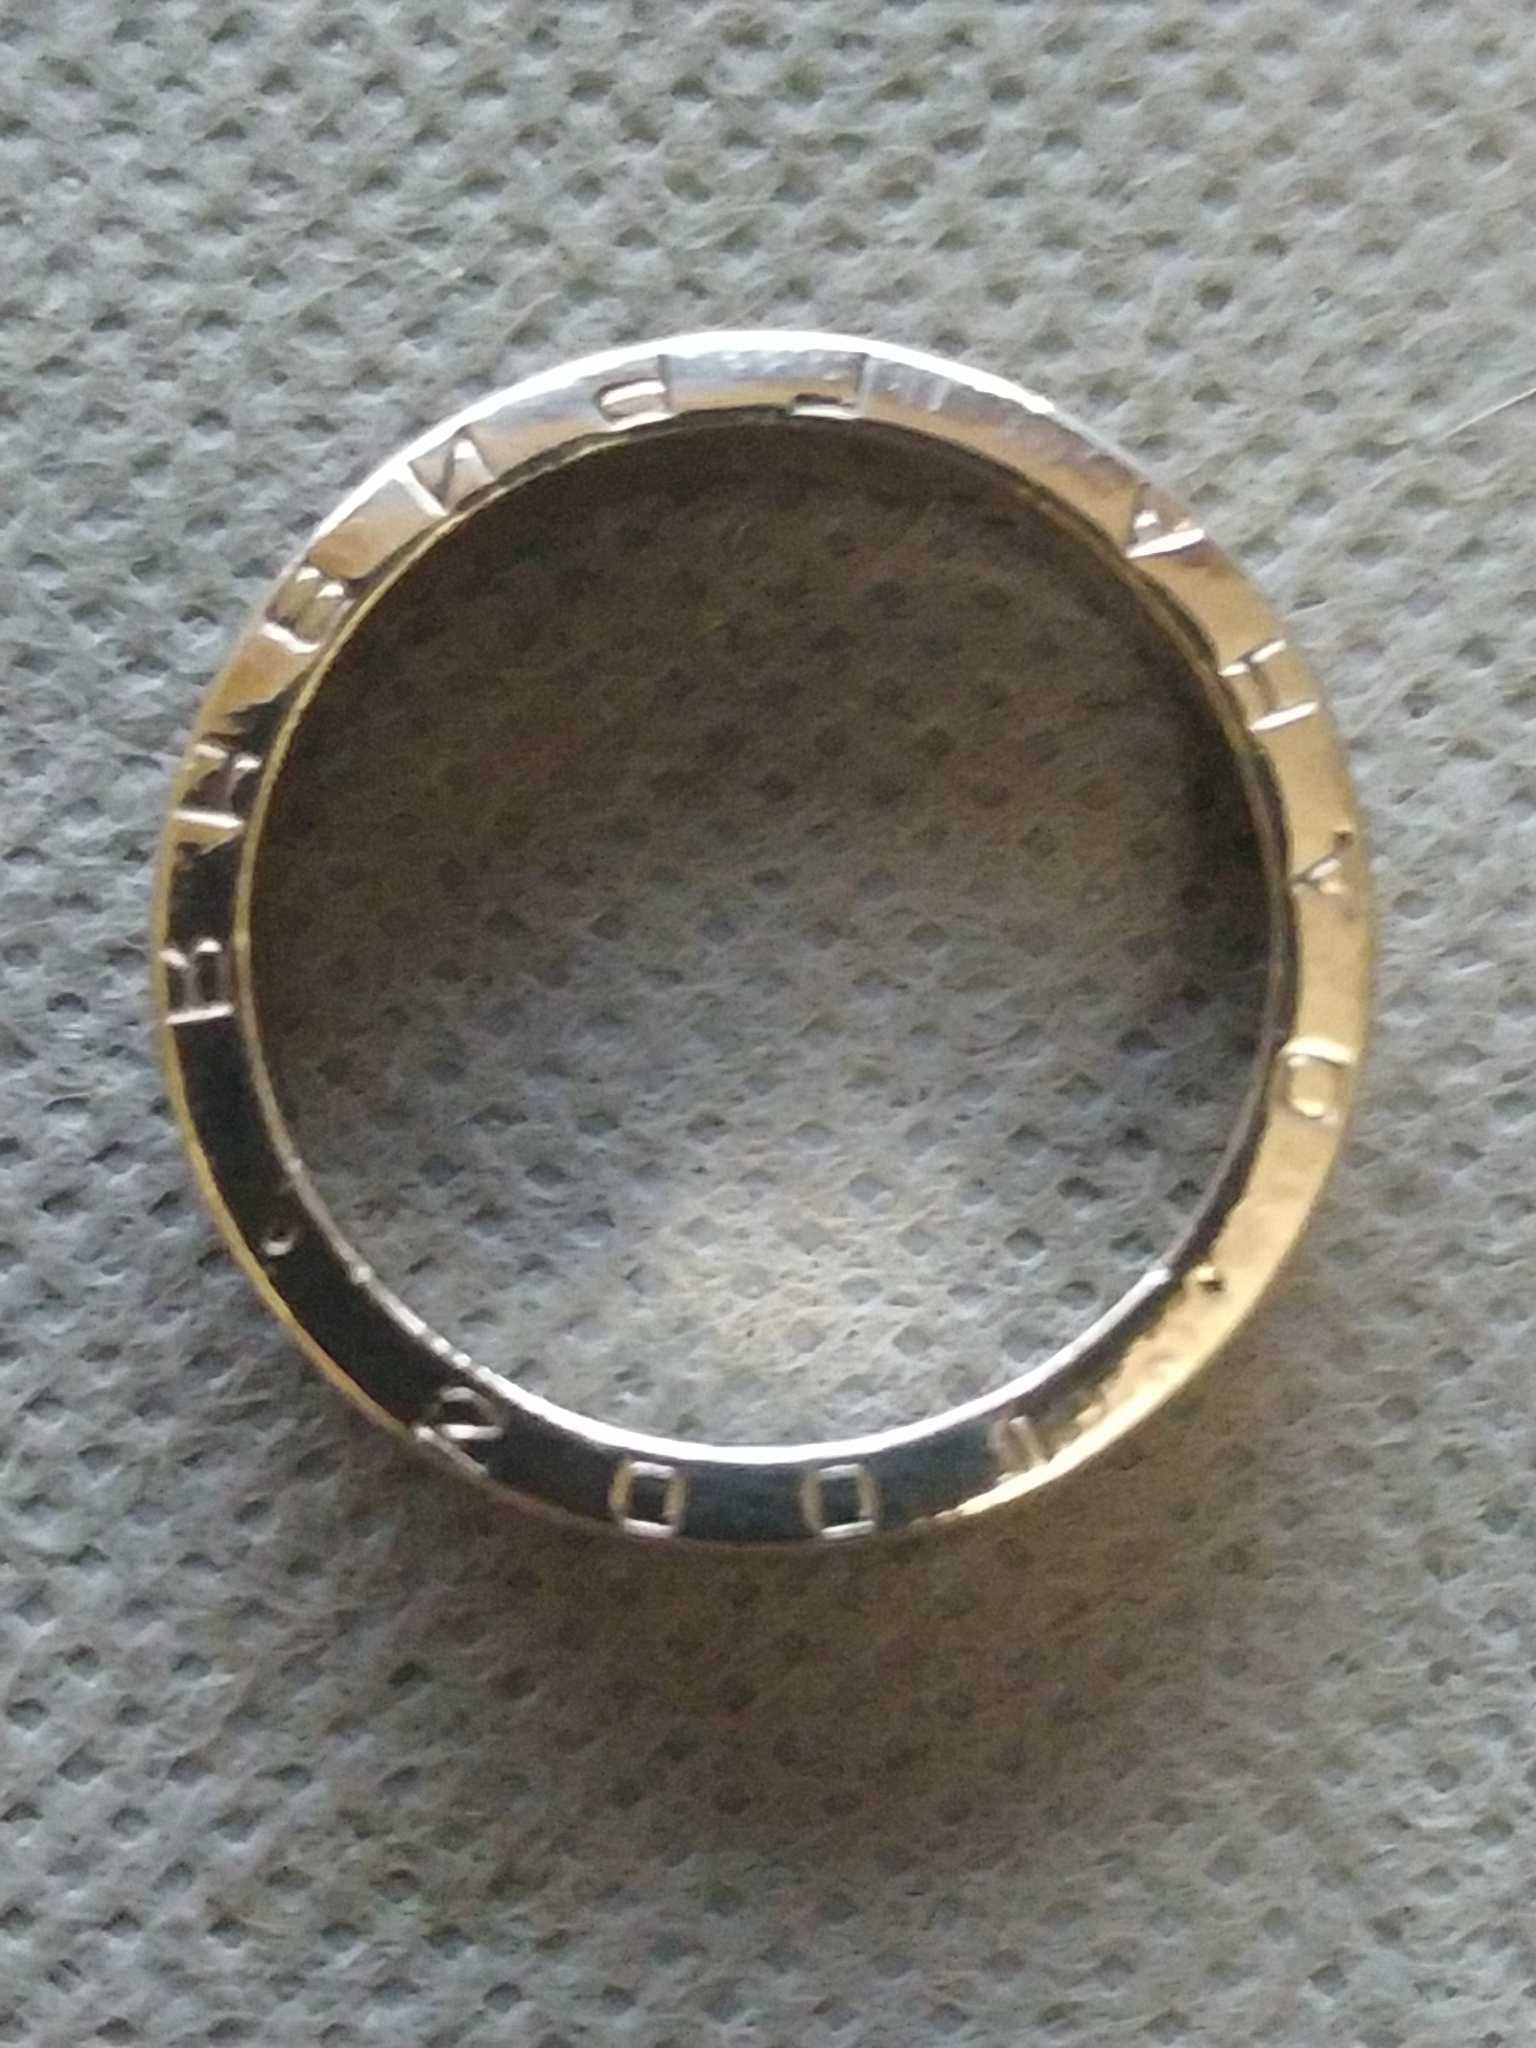 кольцо из бронзы 19 мм.